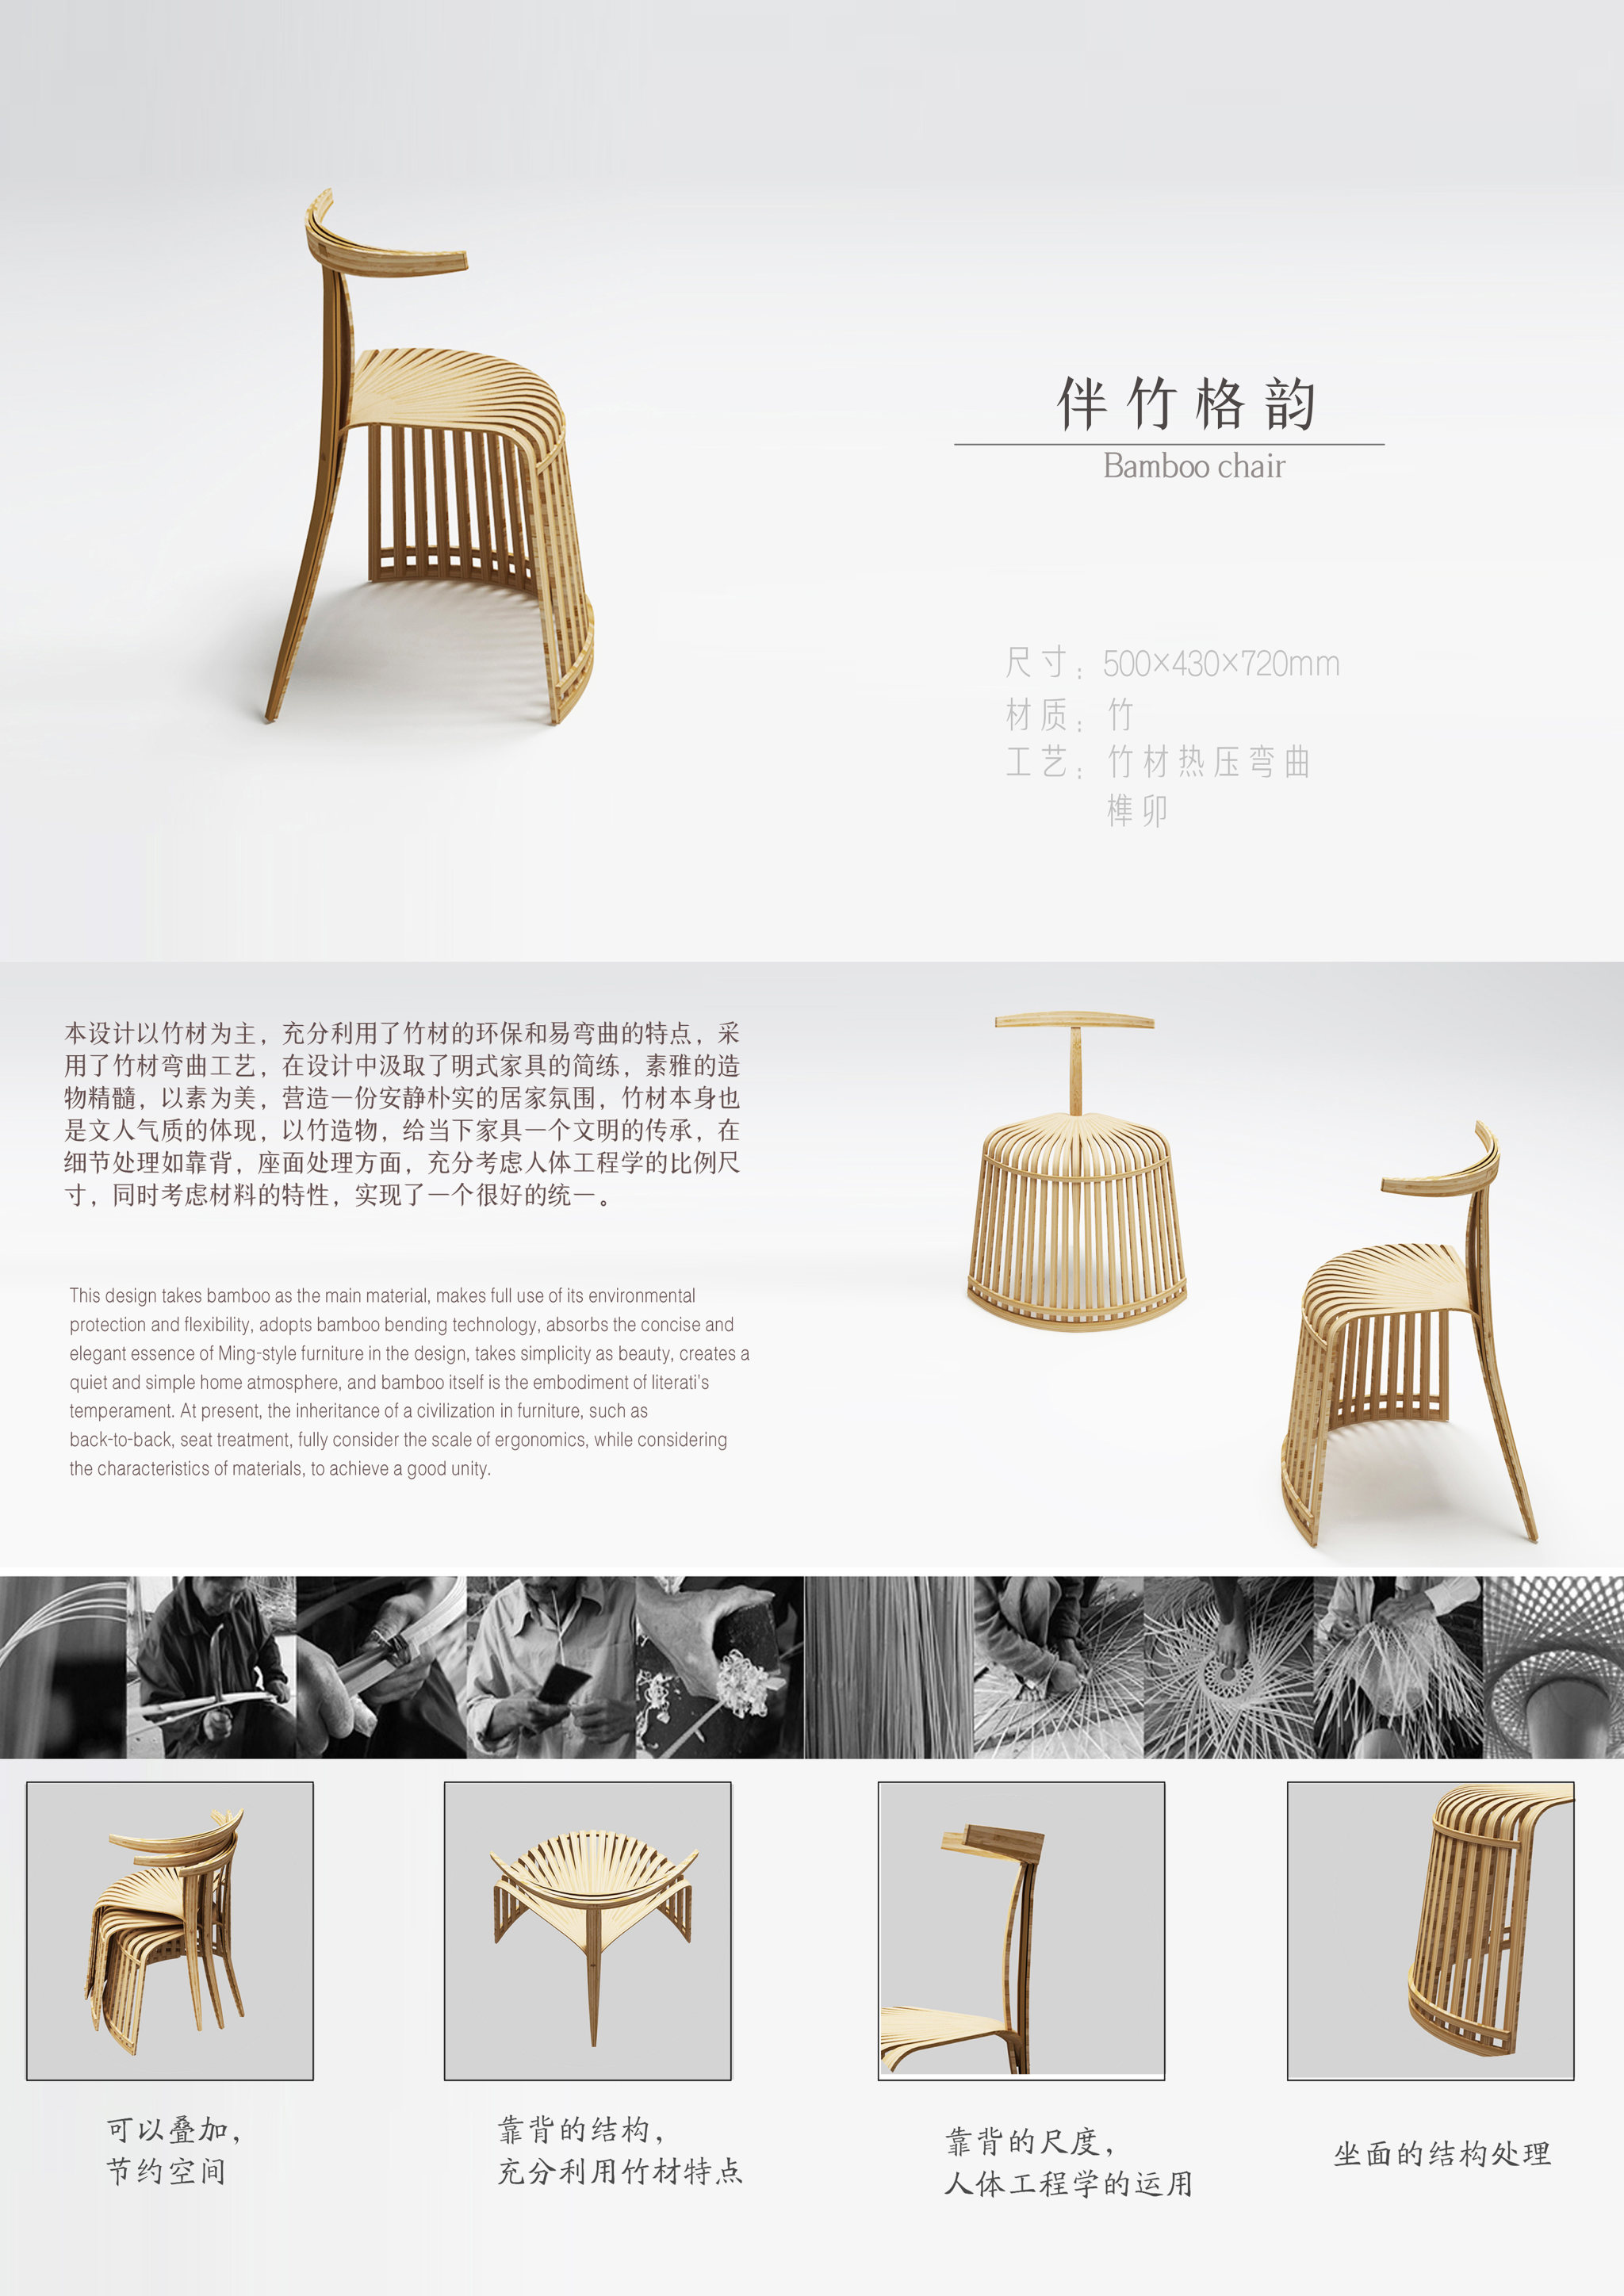 设计说明:本设计以竹材为主,充分利用了竹材的环保和易弯曲的特点